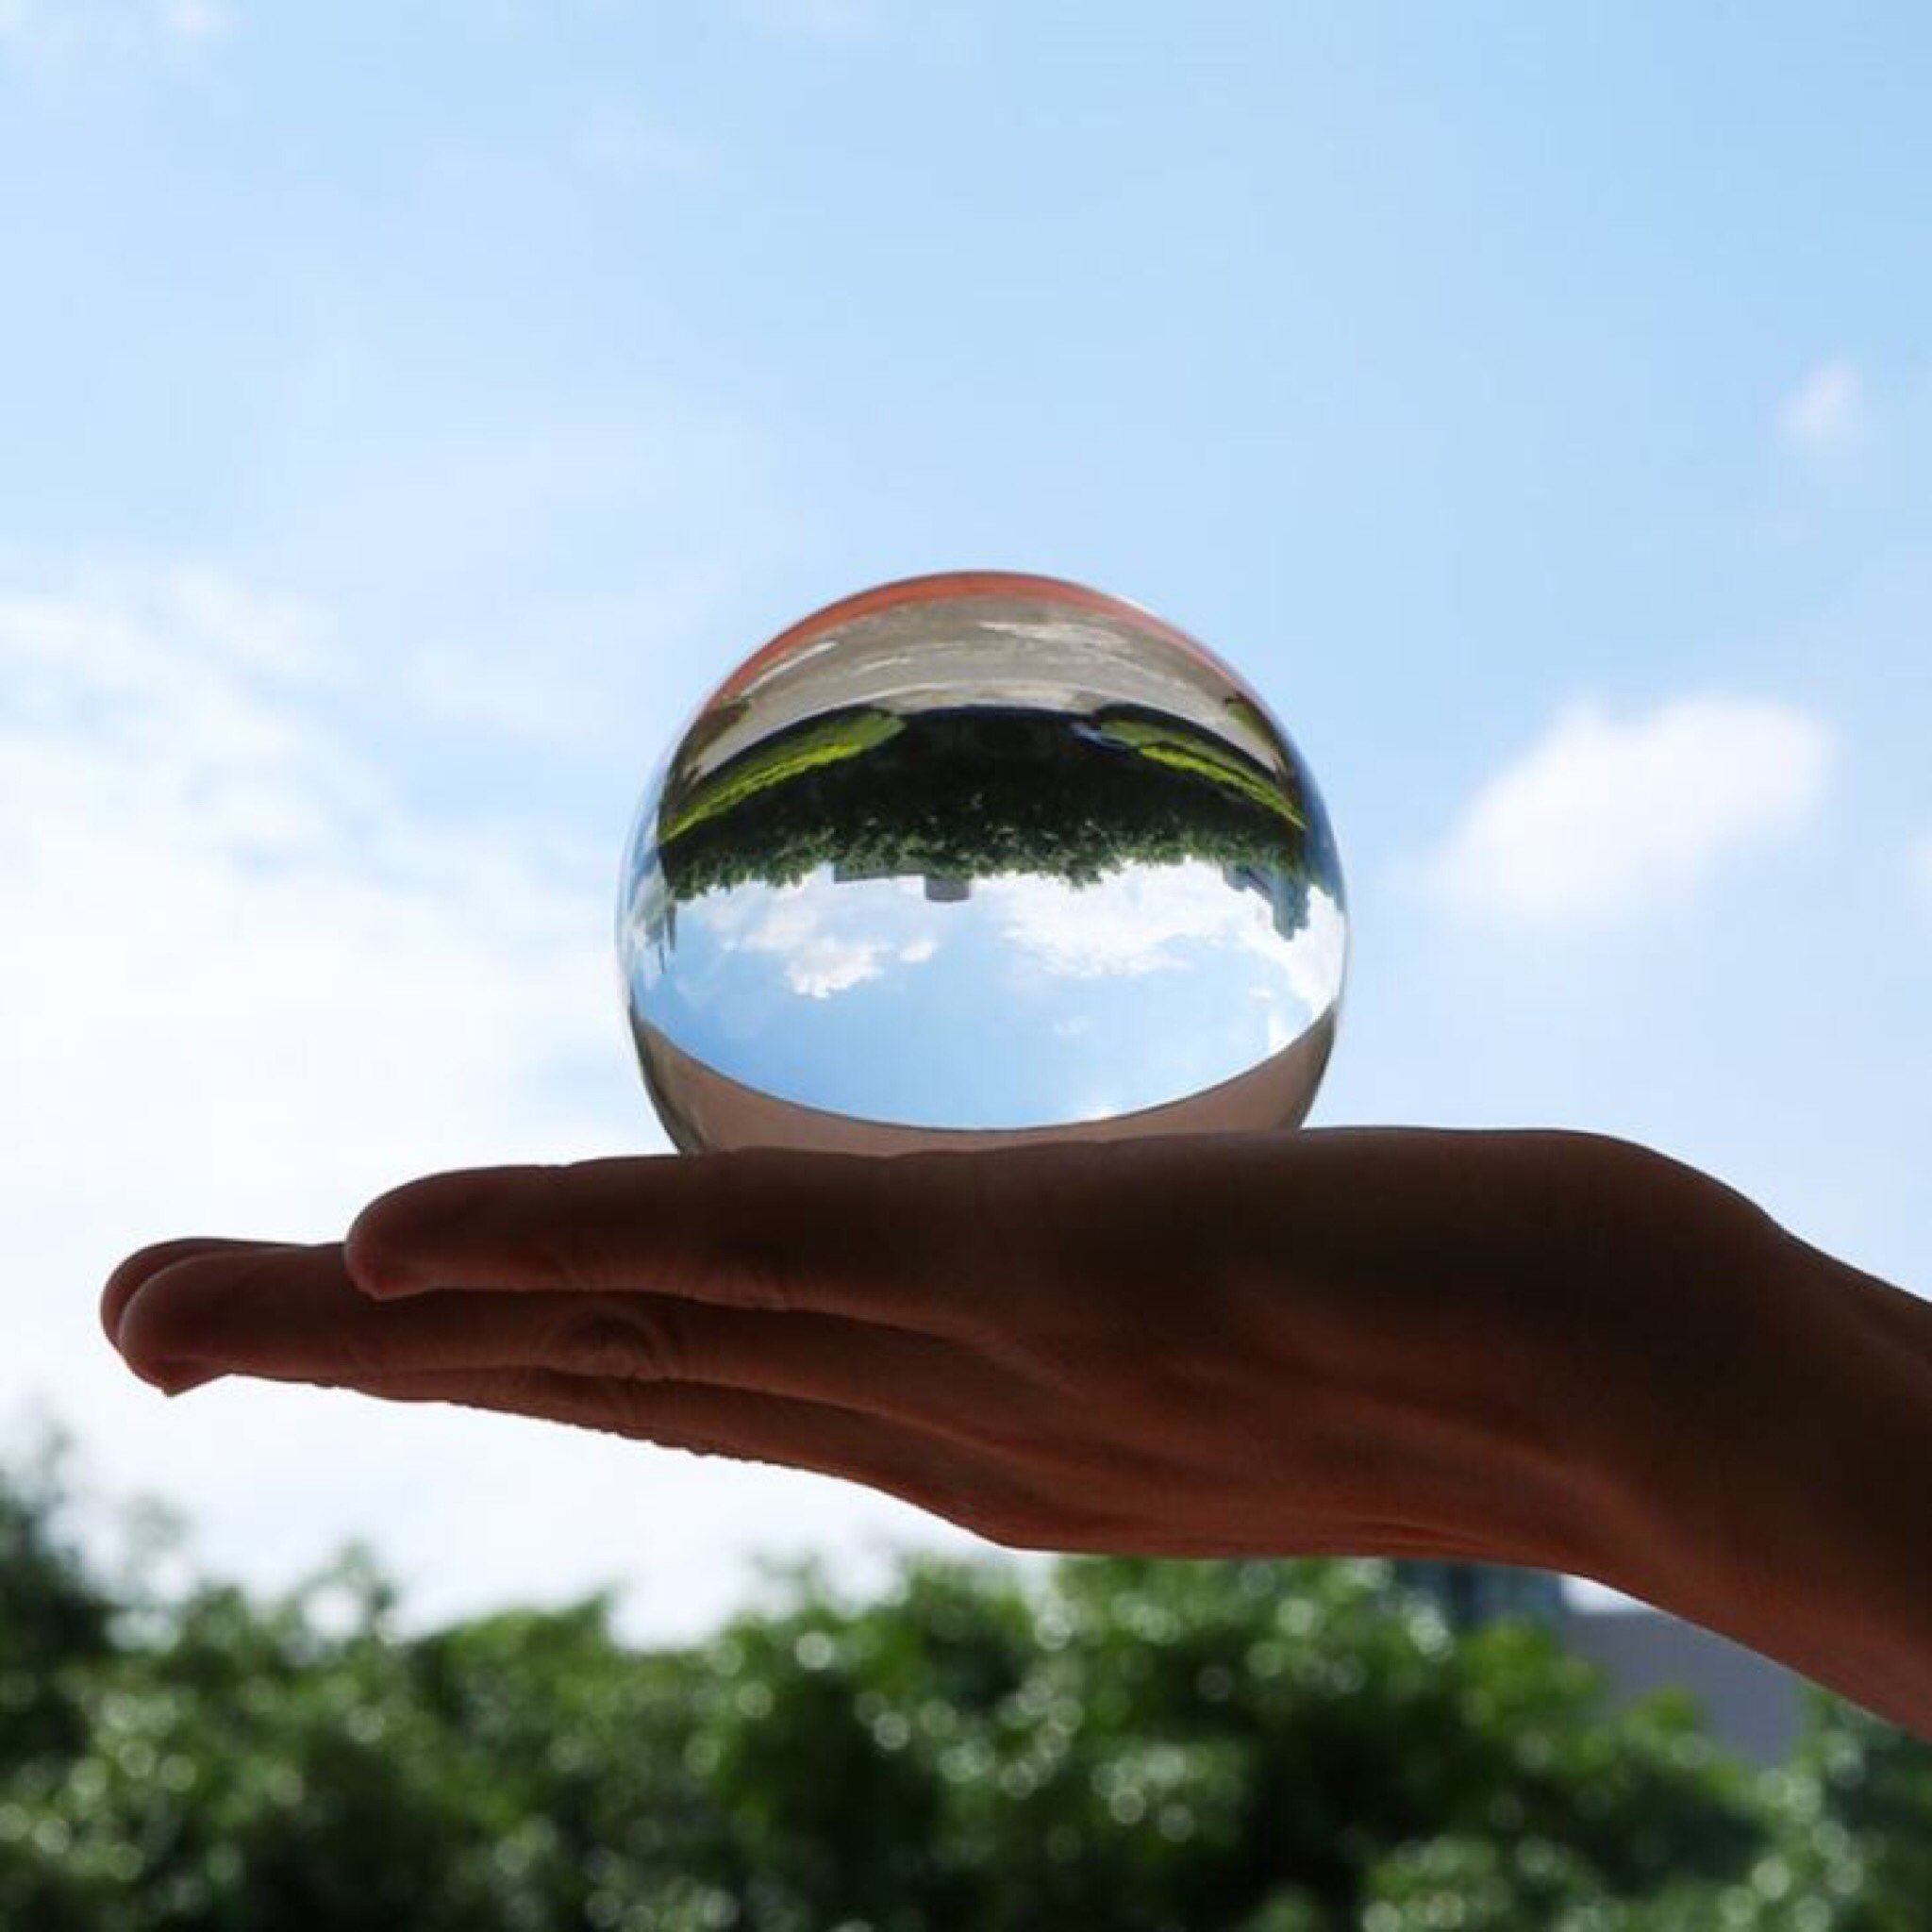 اكسسوارات التصوير الفوتوغرافي كرة بلورية زجاجية